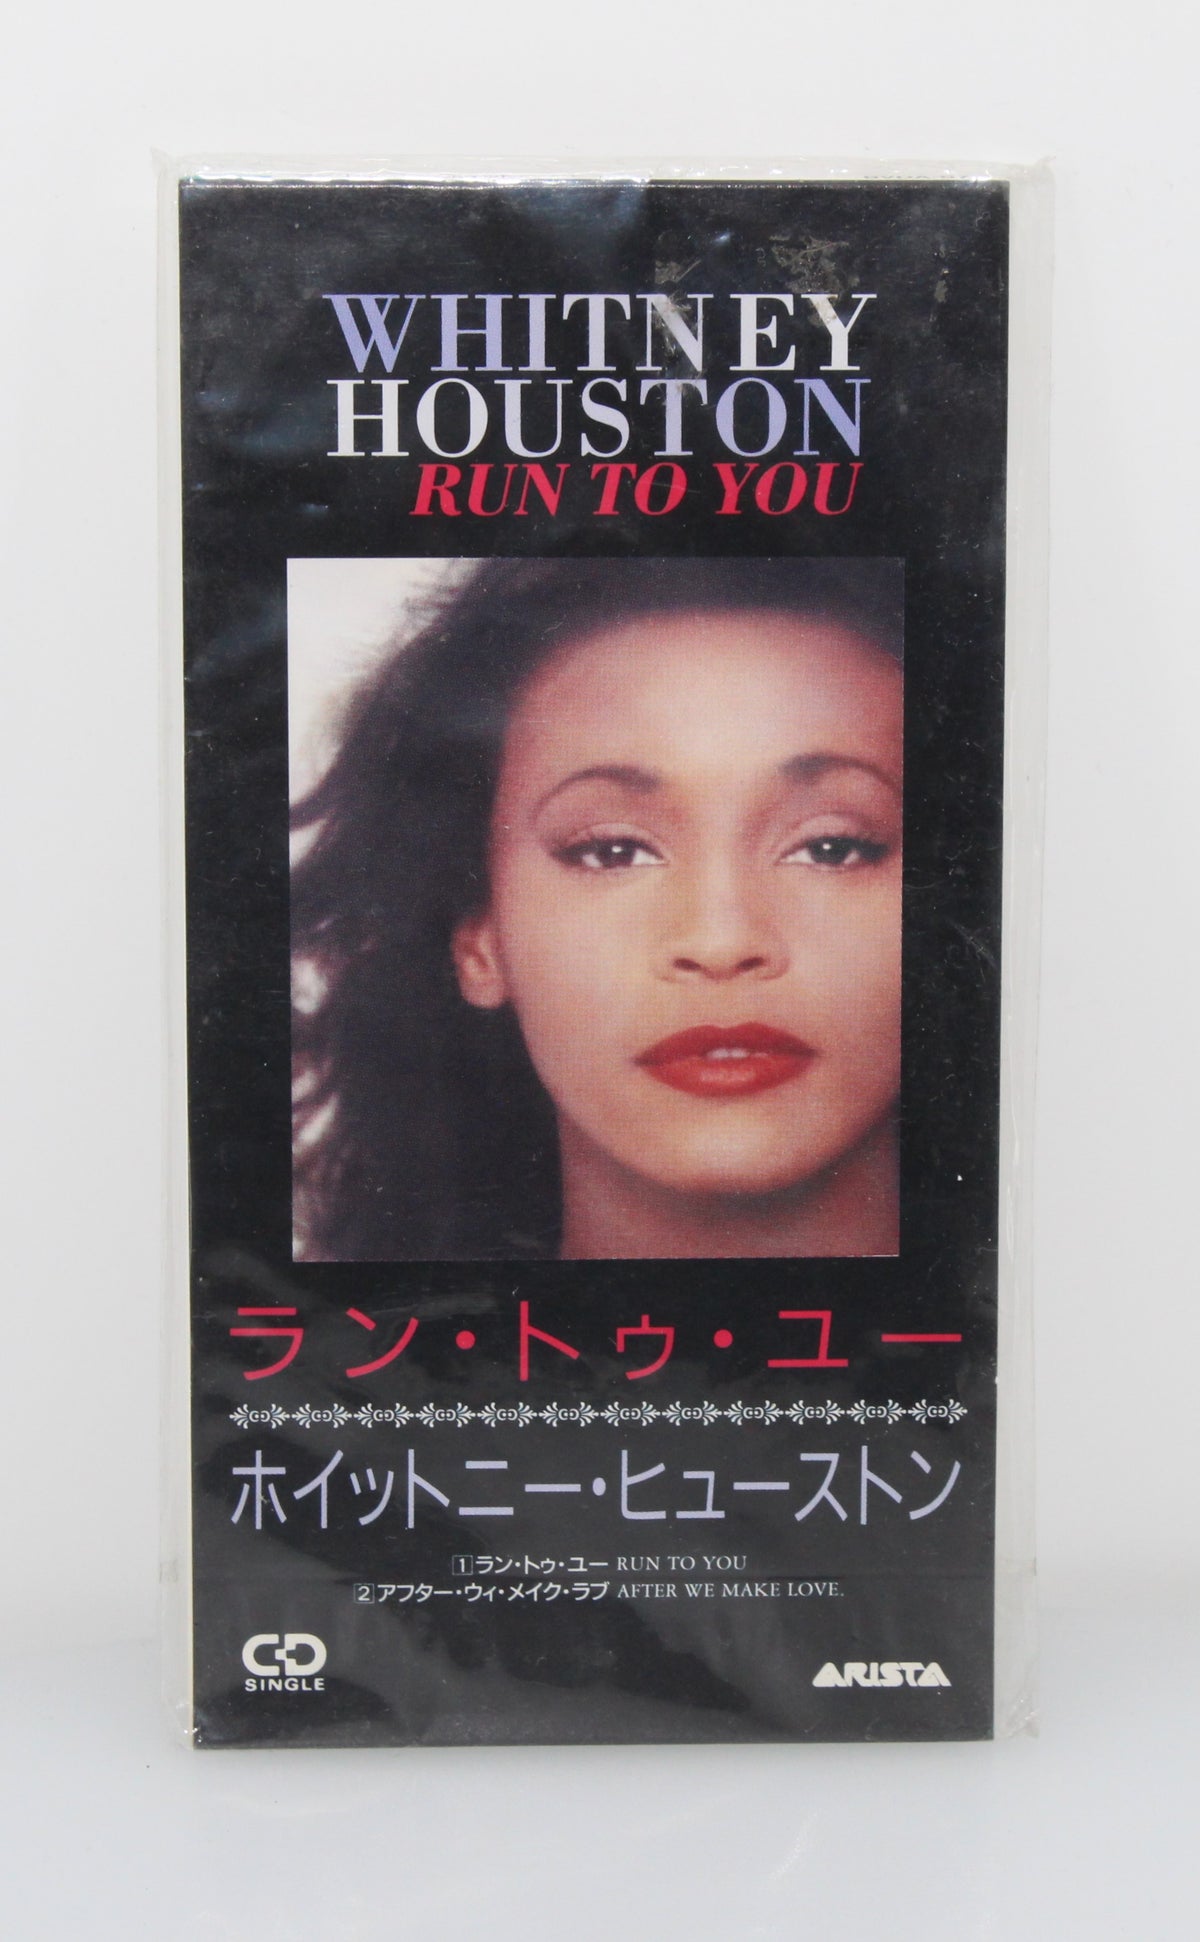 Whitney Houston – Run To You, CD, Mini, Single, Japan 1993